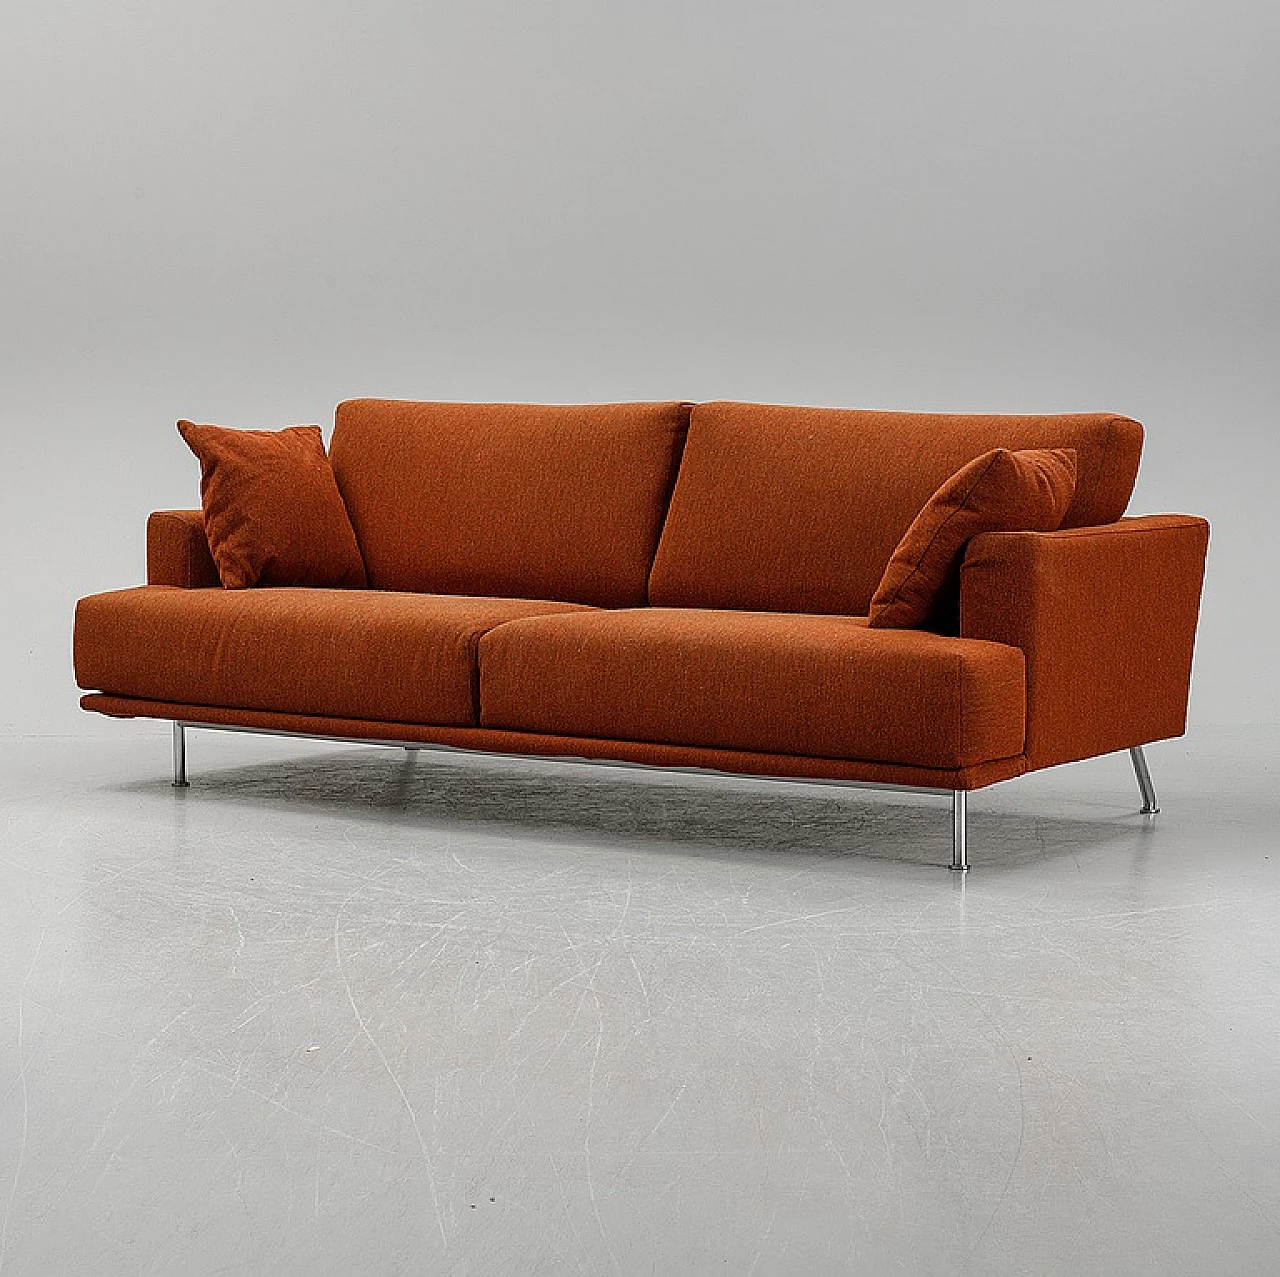 NEST 253 sofa in brick orange by Piero Lissoni for Cassina, 1999 1